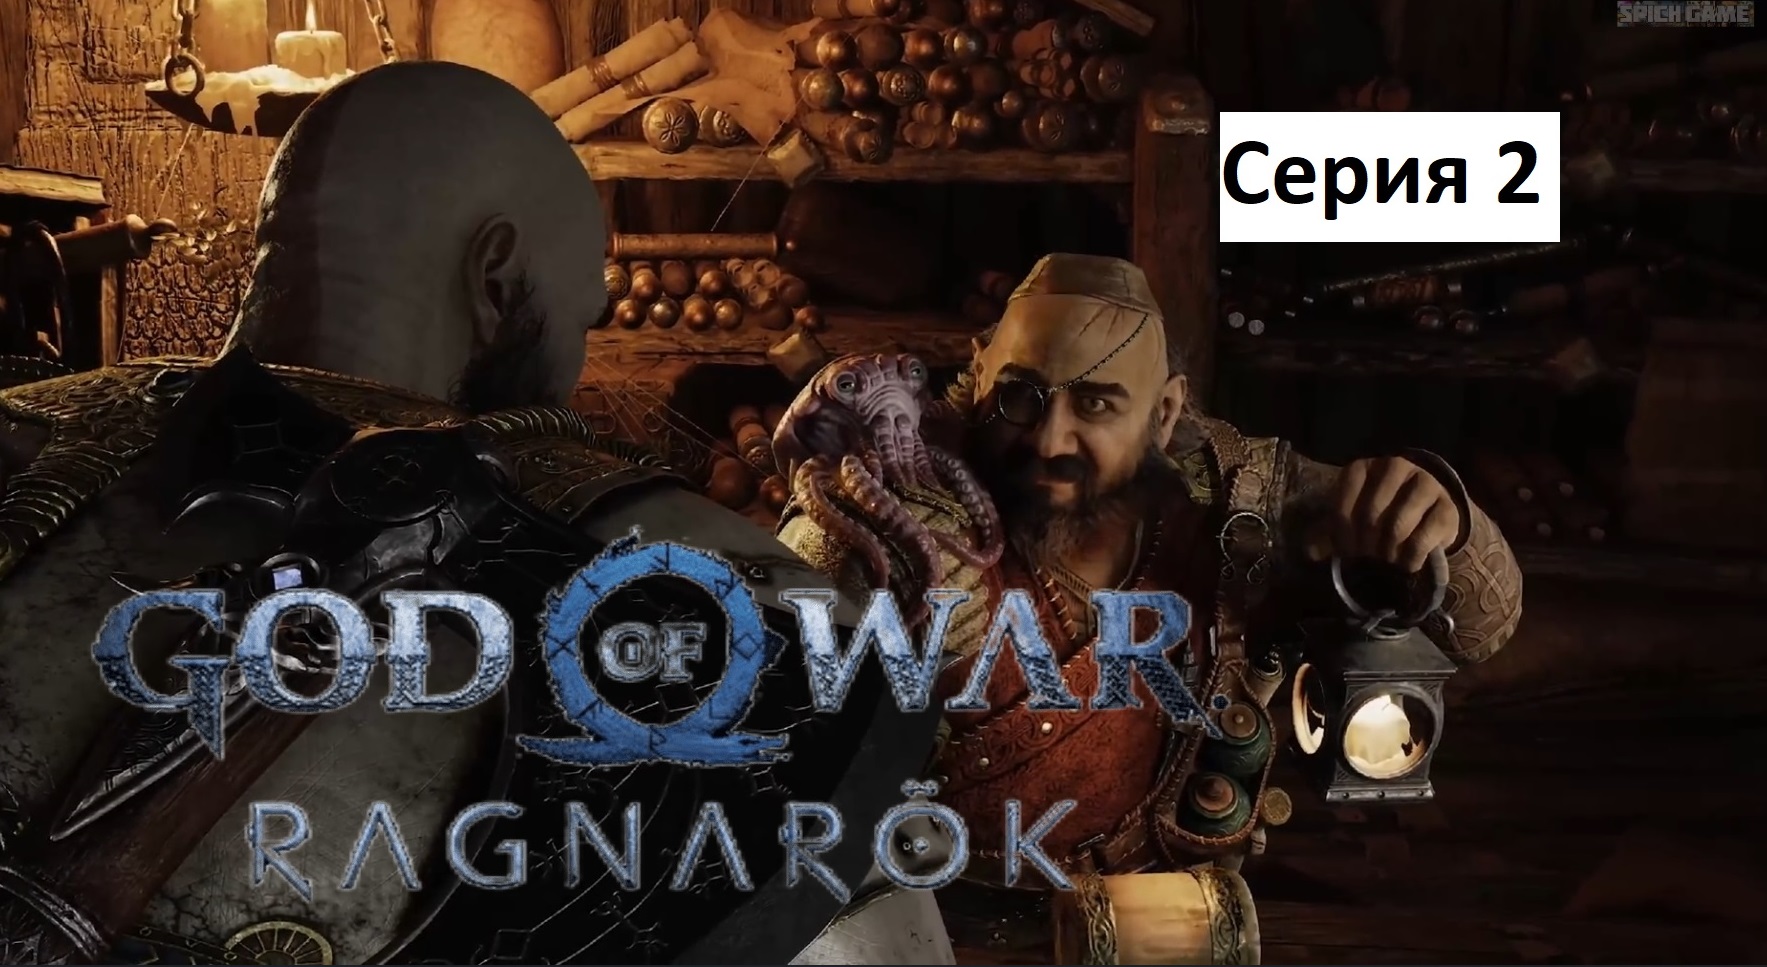 God of War Ragnarok Игрофильм на русском ● Сюжет без лишнего геймплея ● SpiCH GAME Серия 2